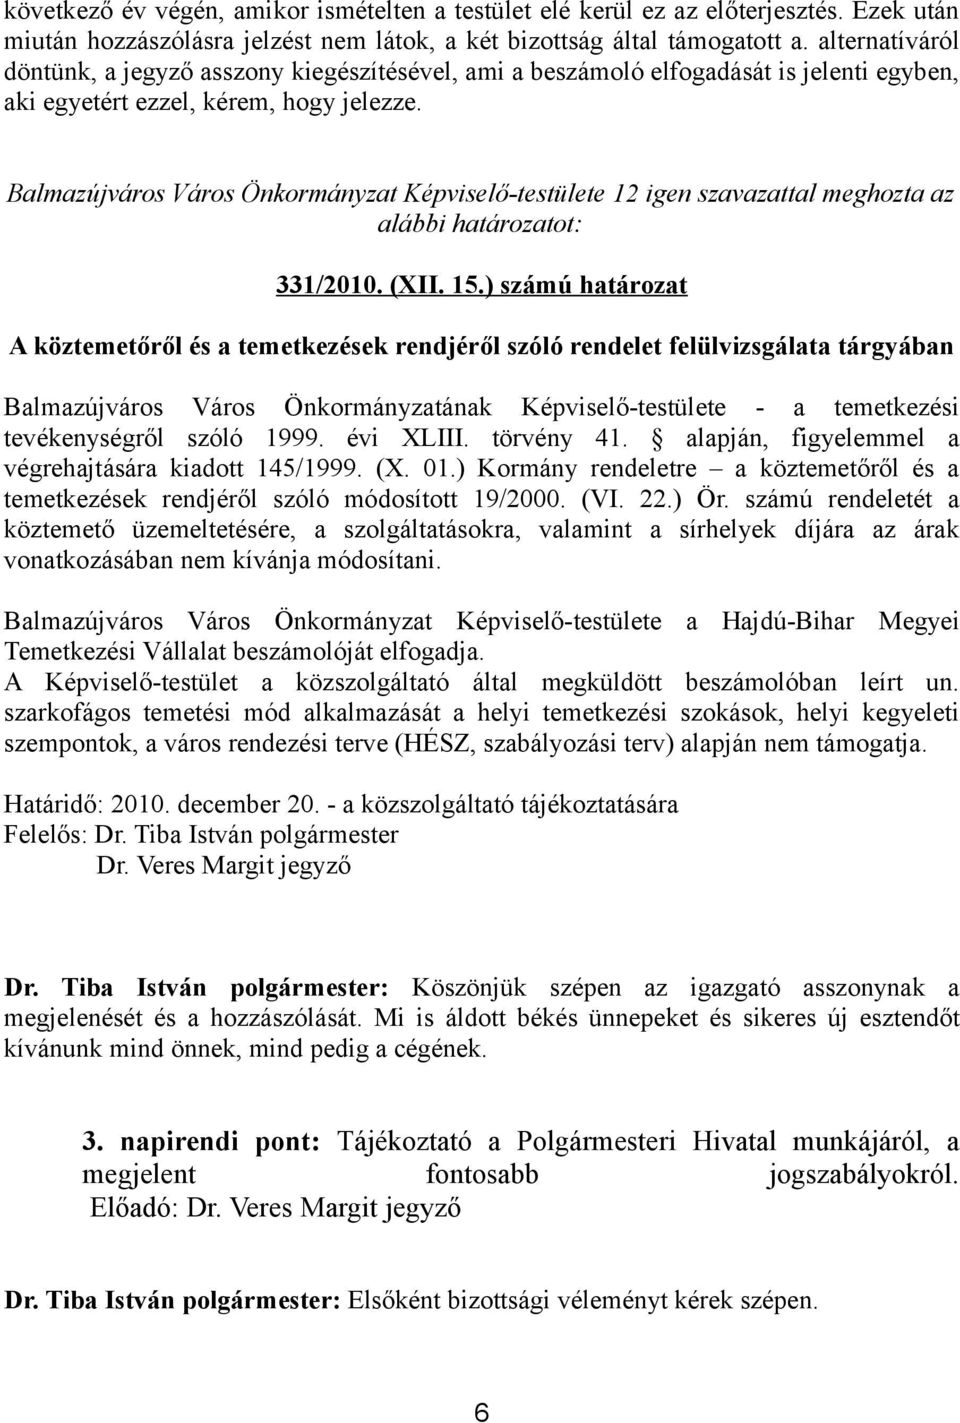 Balmazújváros Város Önkormányzat Képviselő-testülete 12 igen szavazattal meghozta az alábbi határozatot: 331/2010. (XII. 15.